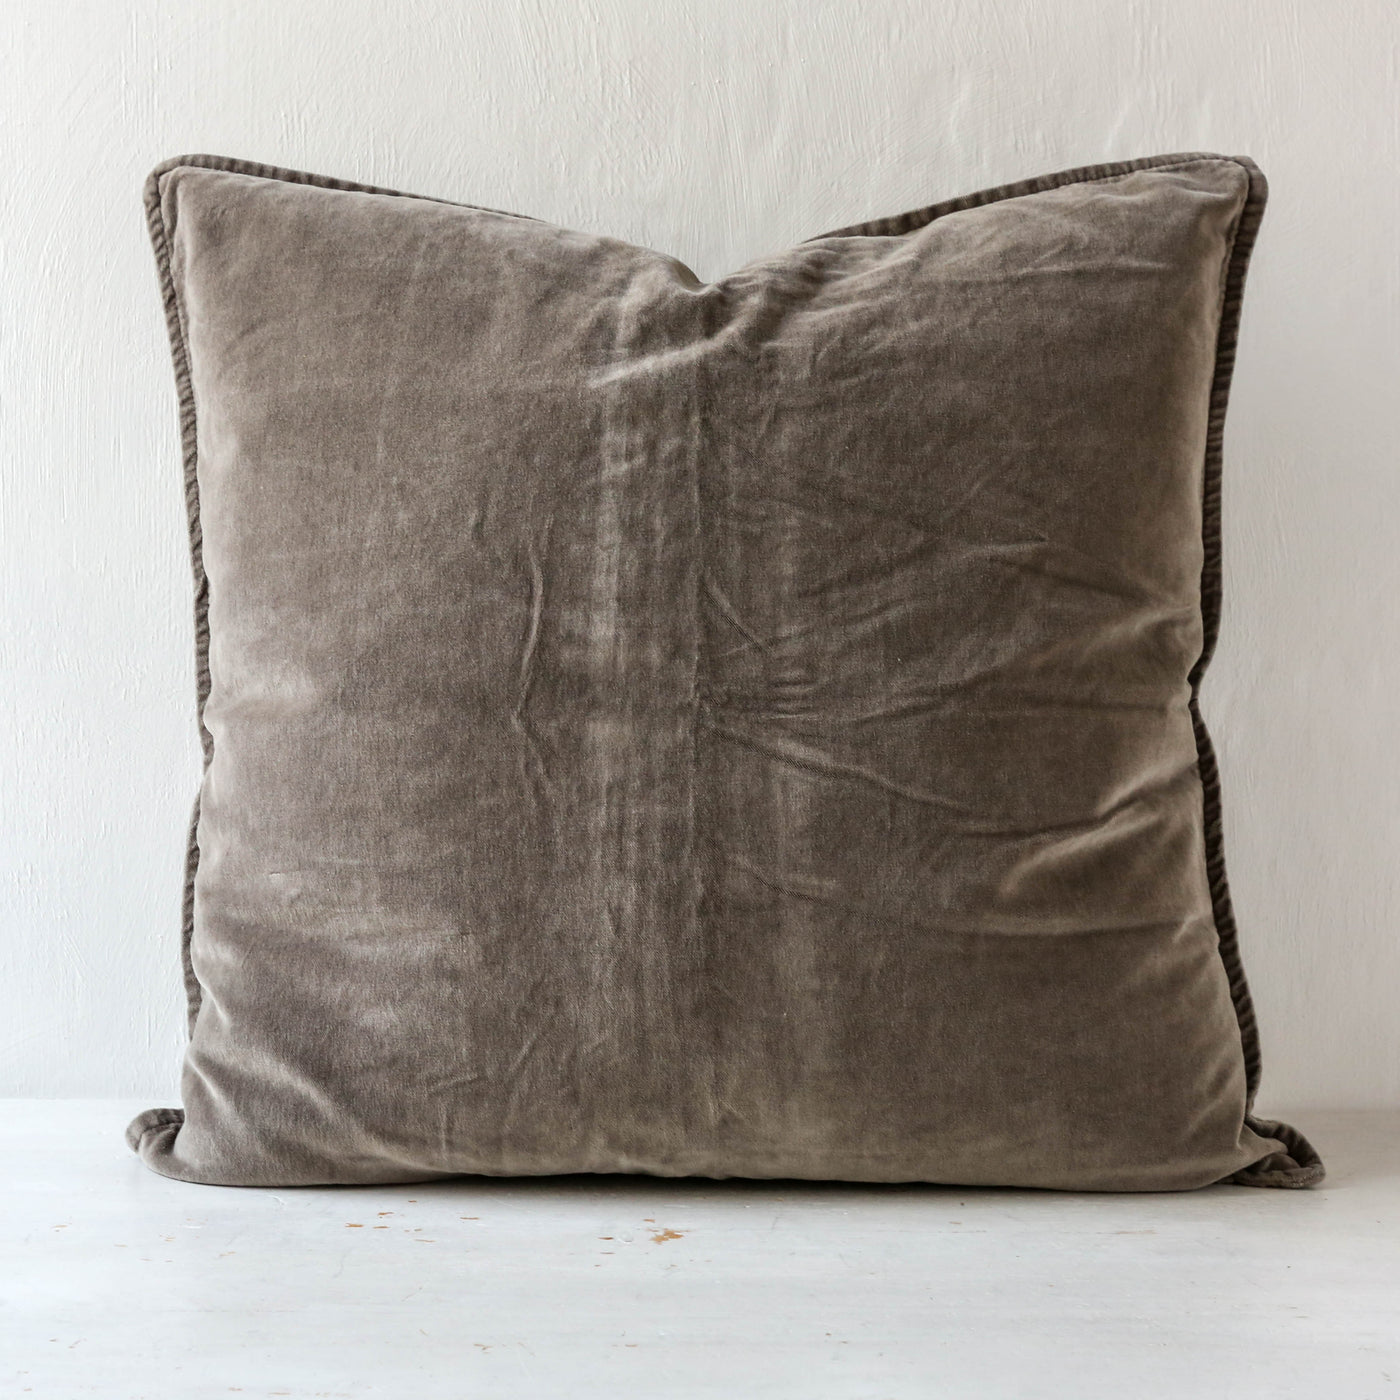 Cotton Velvet Cushion Cover - Soil